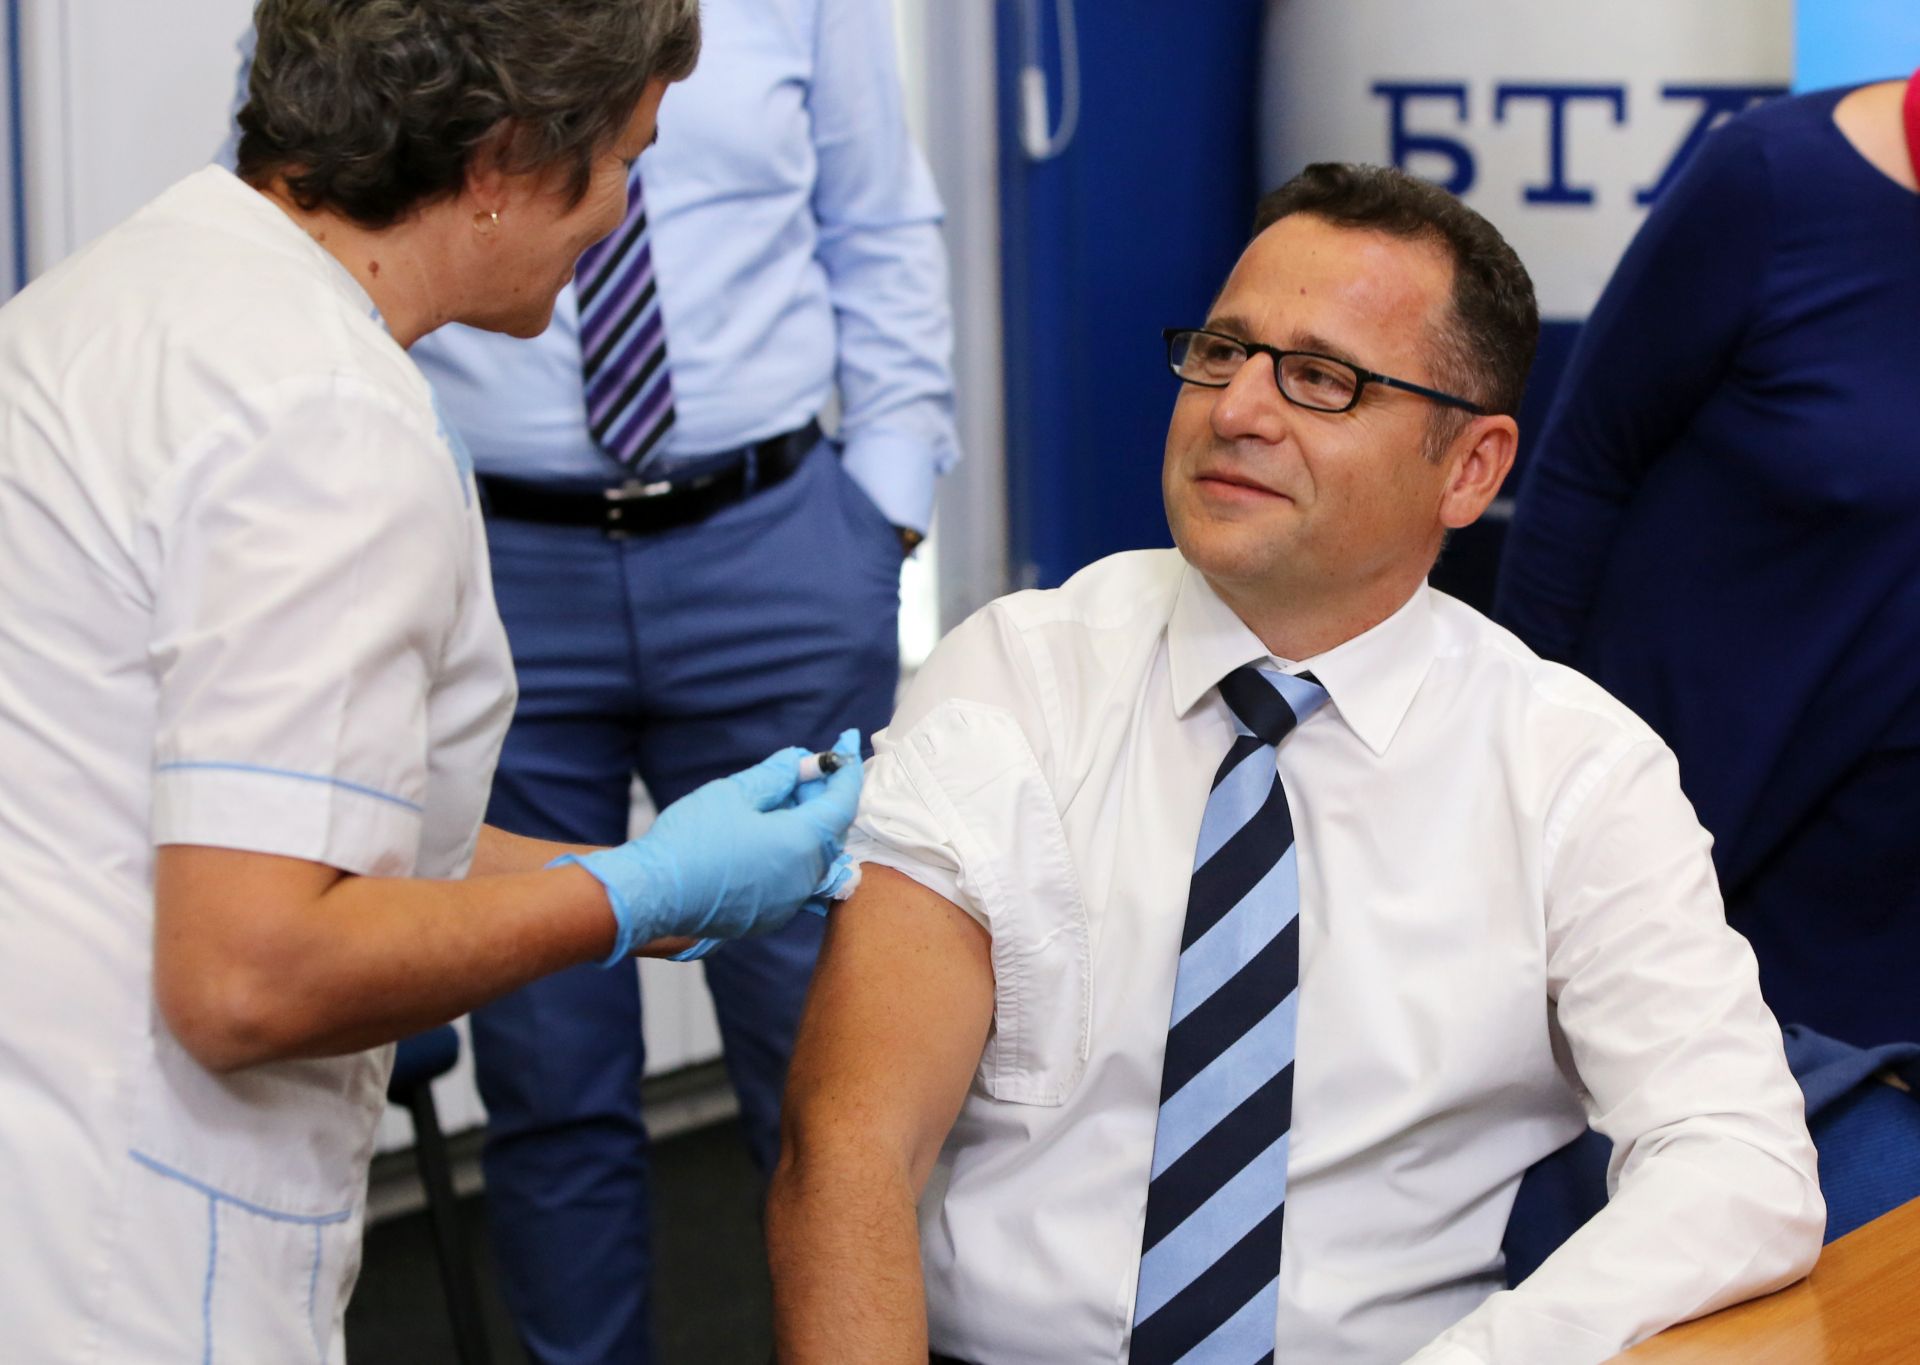 Д-р Скендер Скала, шеф на офиса на Световната здравна организация у нас, също се ваксинира 